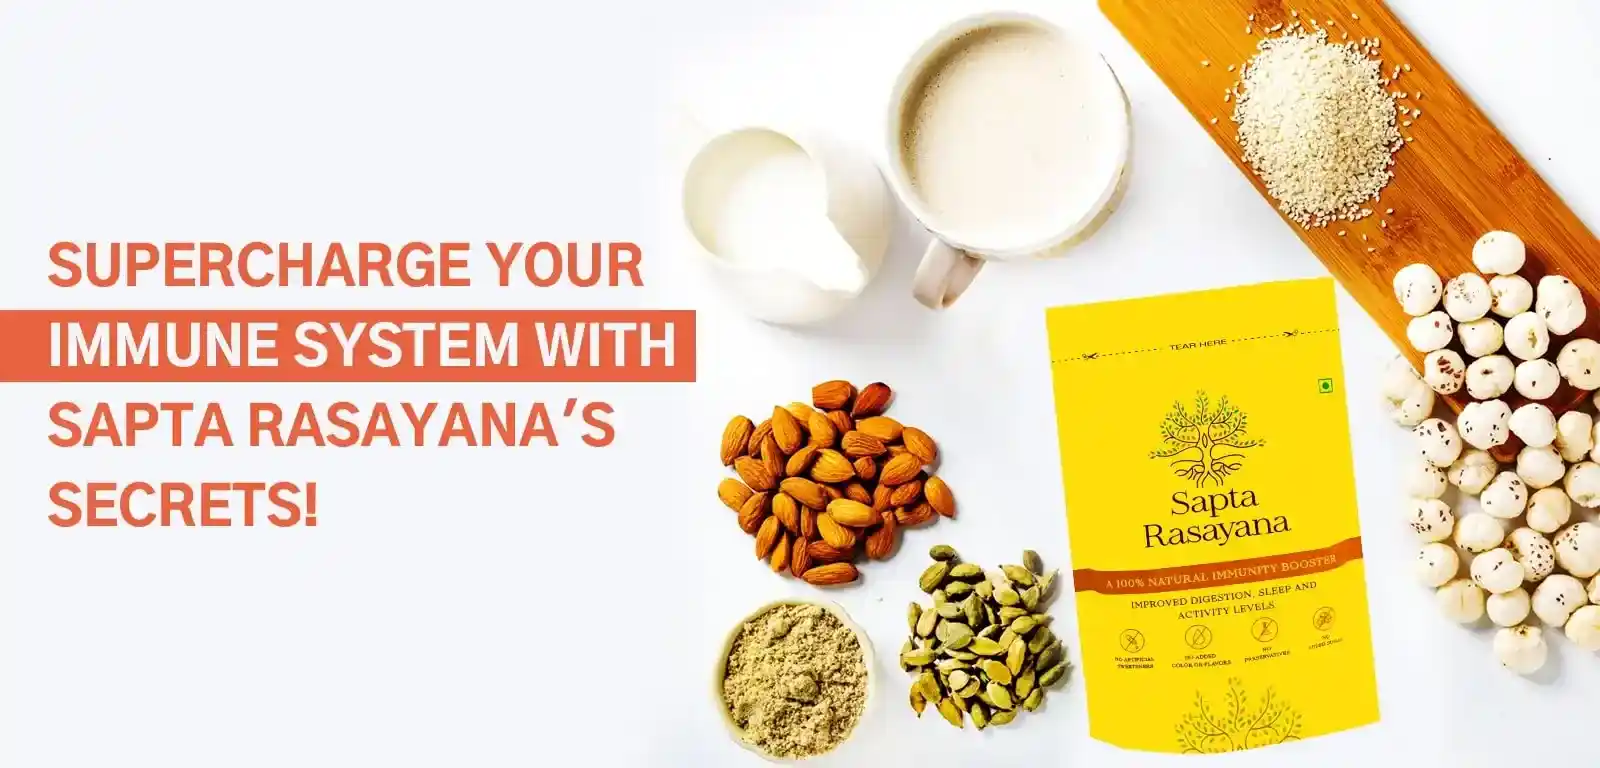 Sapta Rasayana Immunity Booster Powder with Ingredients: Makhana, Poppy Seeds, Almonds, Milk, and Cardamom